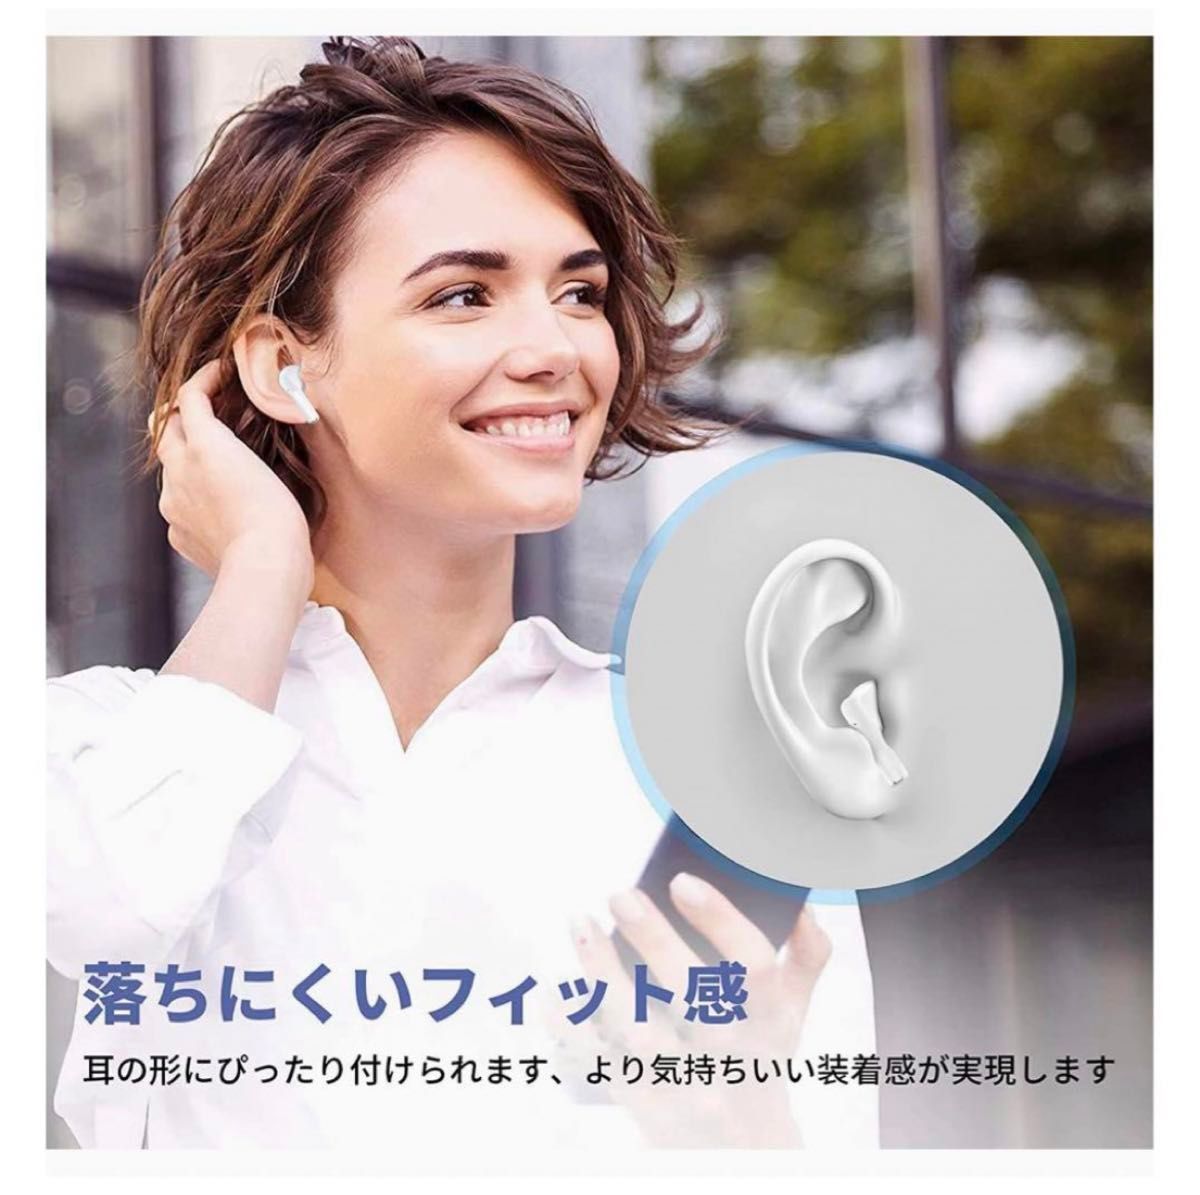 ワイヤレスイヤホン Bluetooth5.3 新品未使用 防水防汗 ワンタッチ